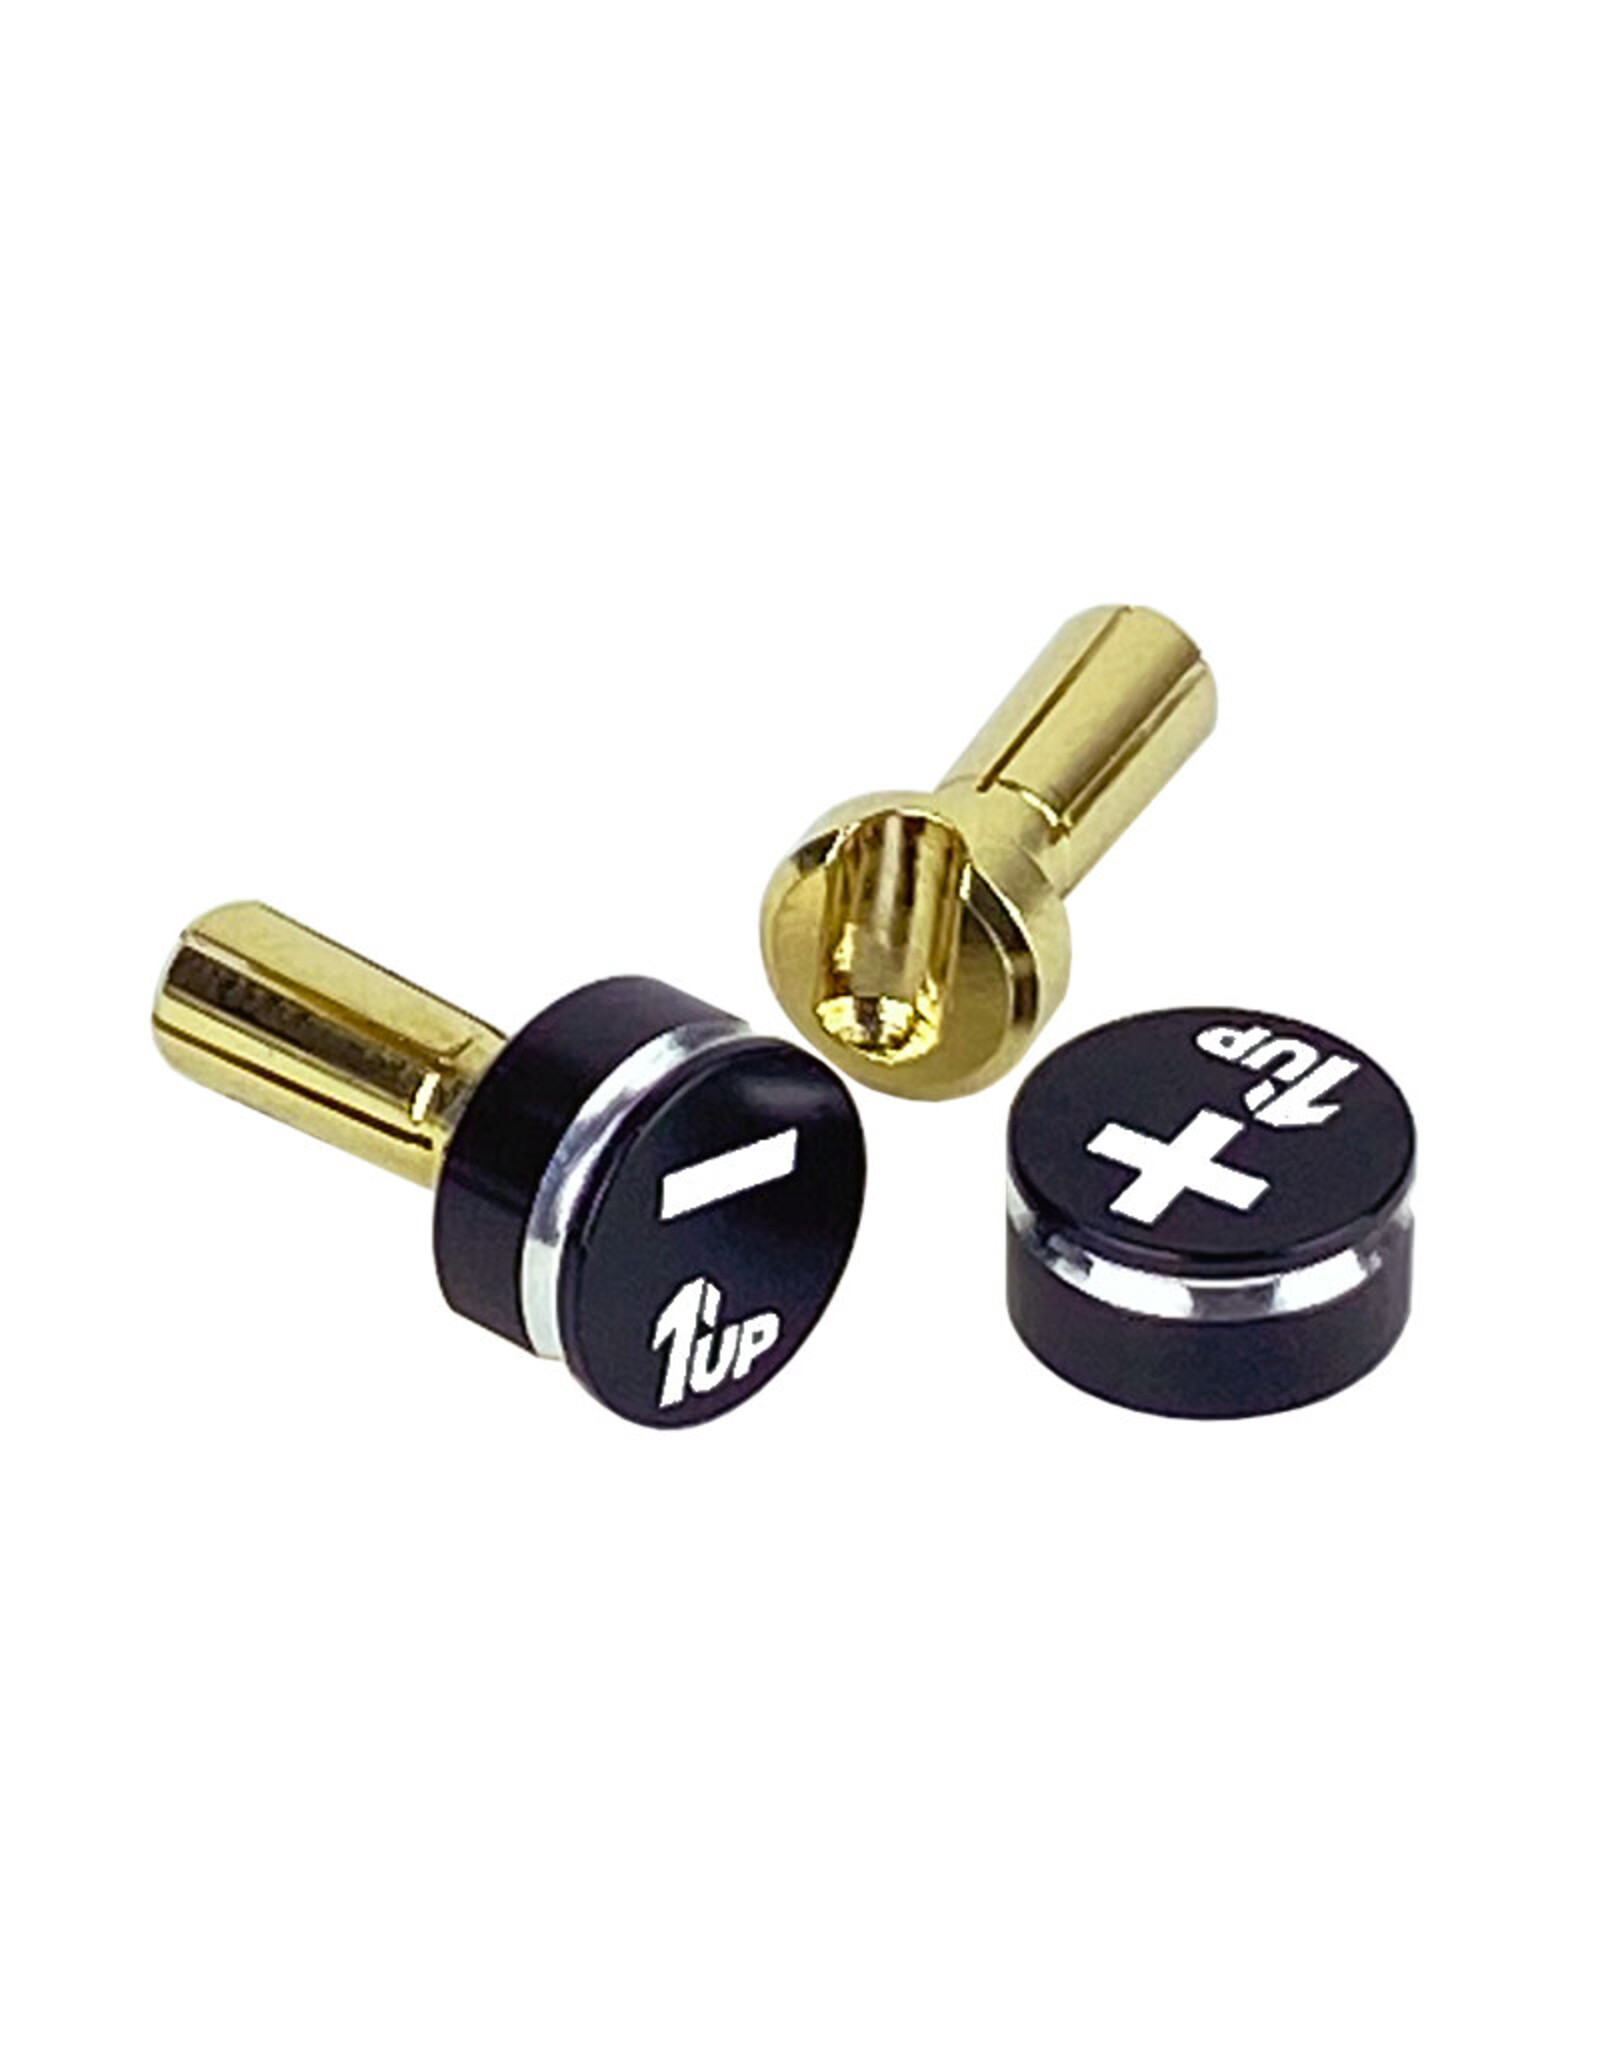 1UP Racing LowPro Bullet Plugs & Grips, 4mm, Black/Black